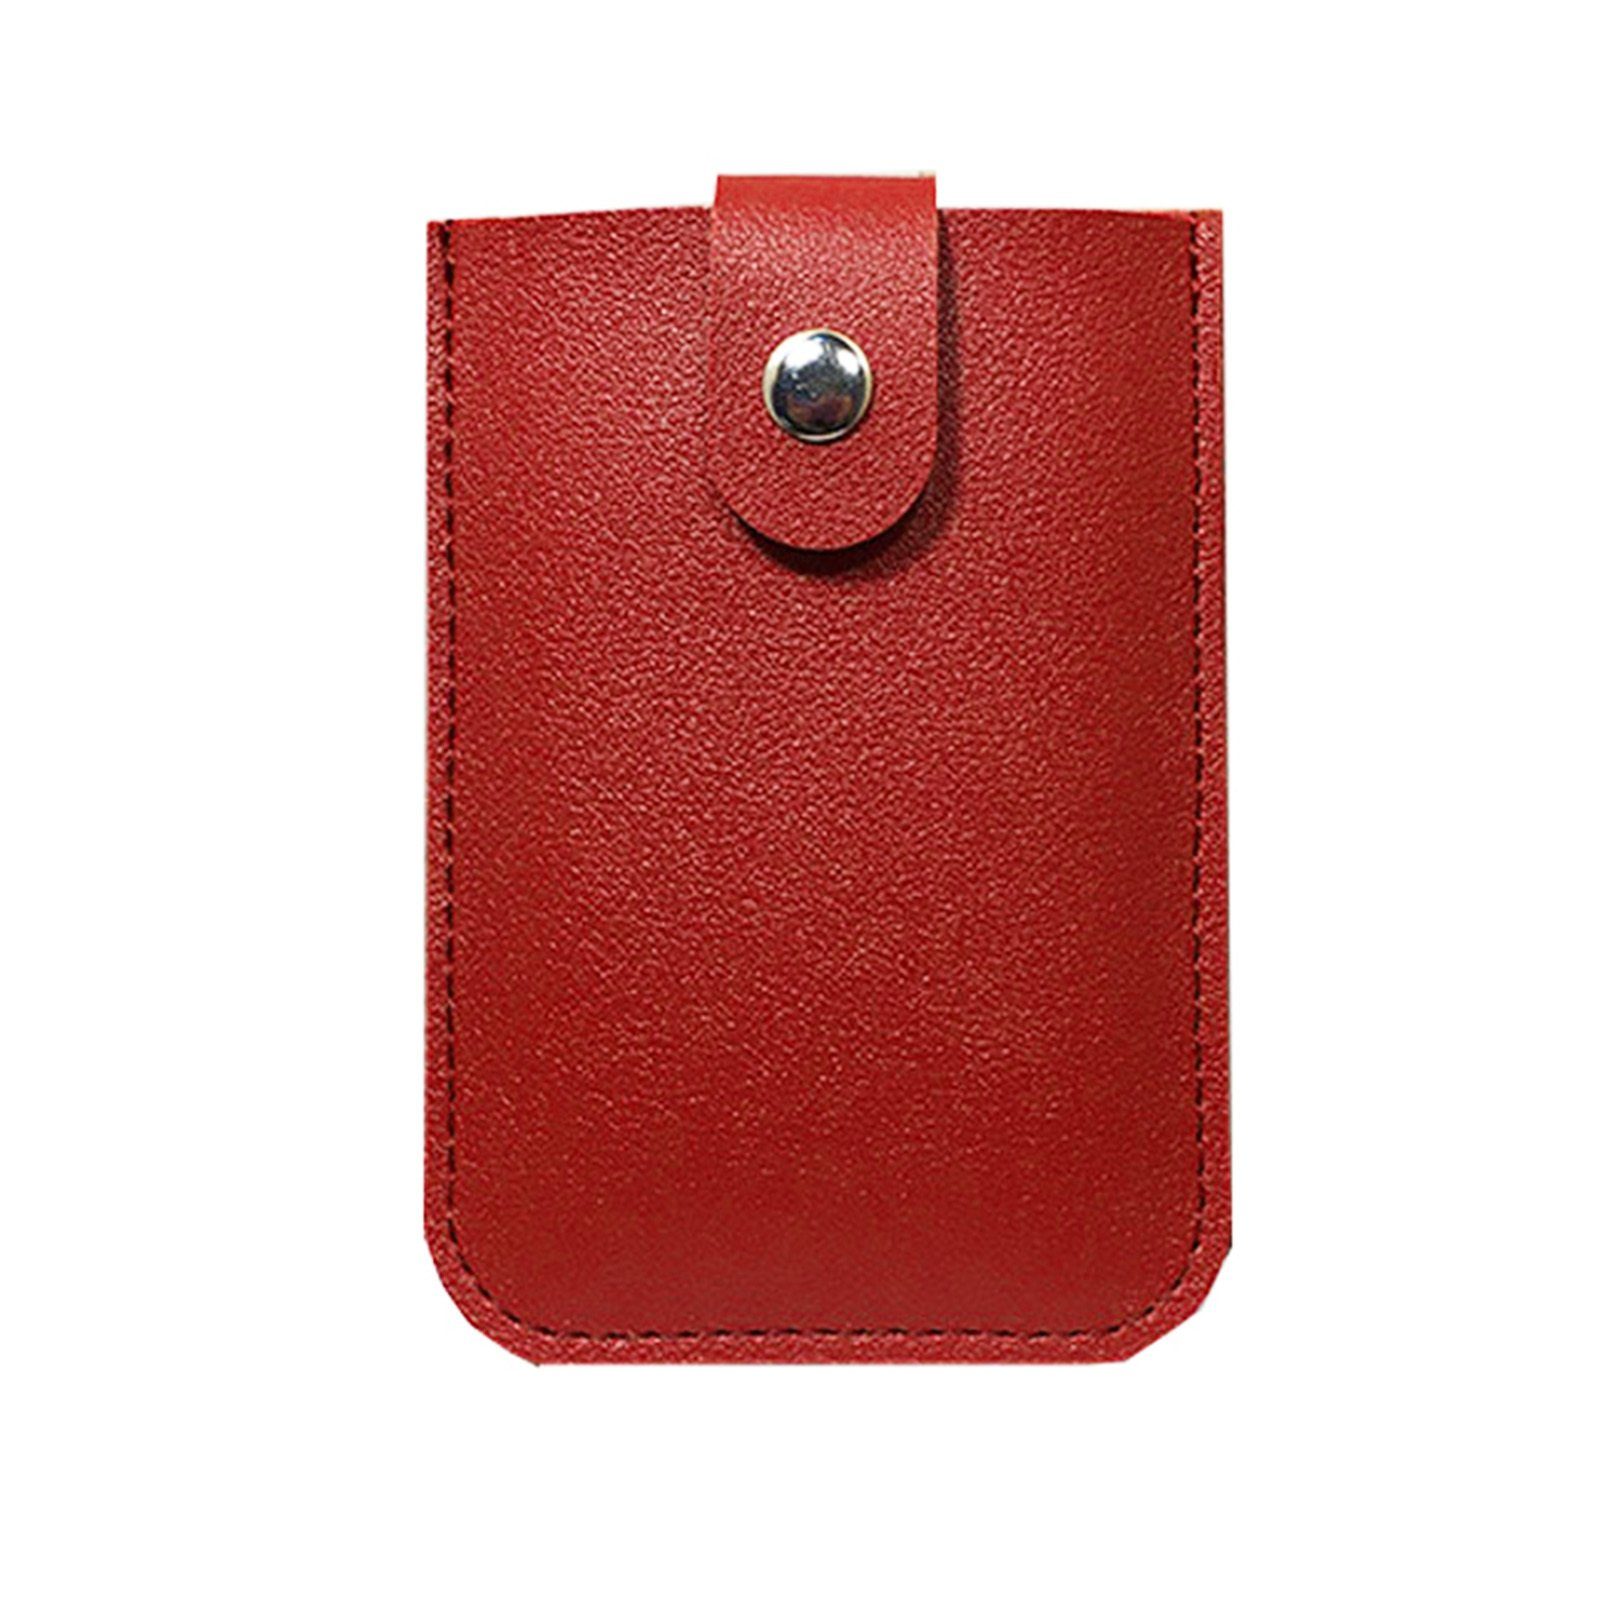 Blusmart Mini Geldbörse Ausziehbarer Kartenhalter Mit 6 Fächern, Tragbares red